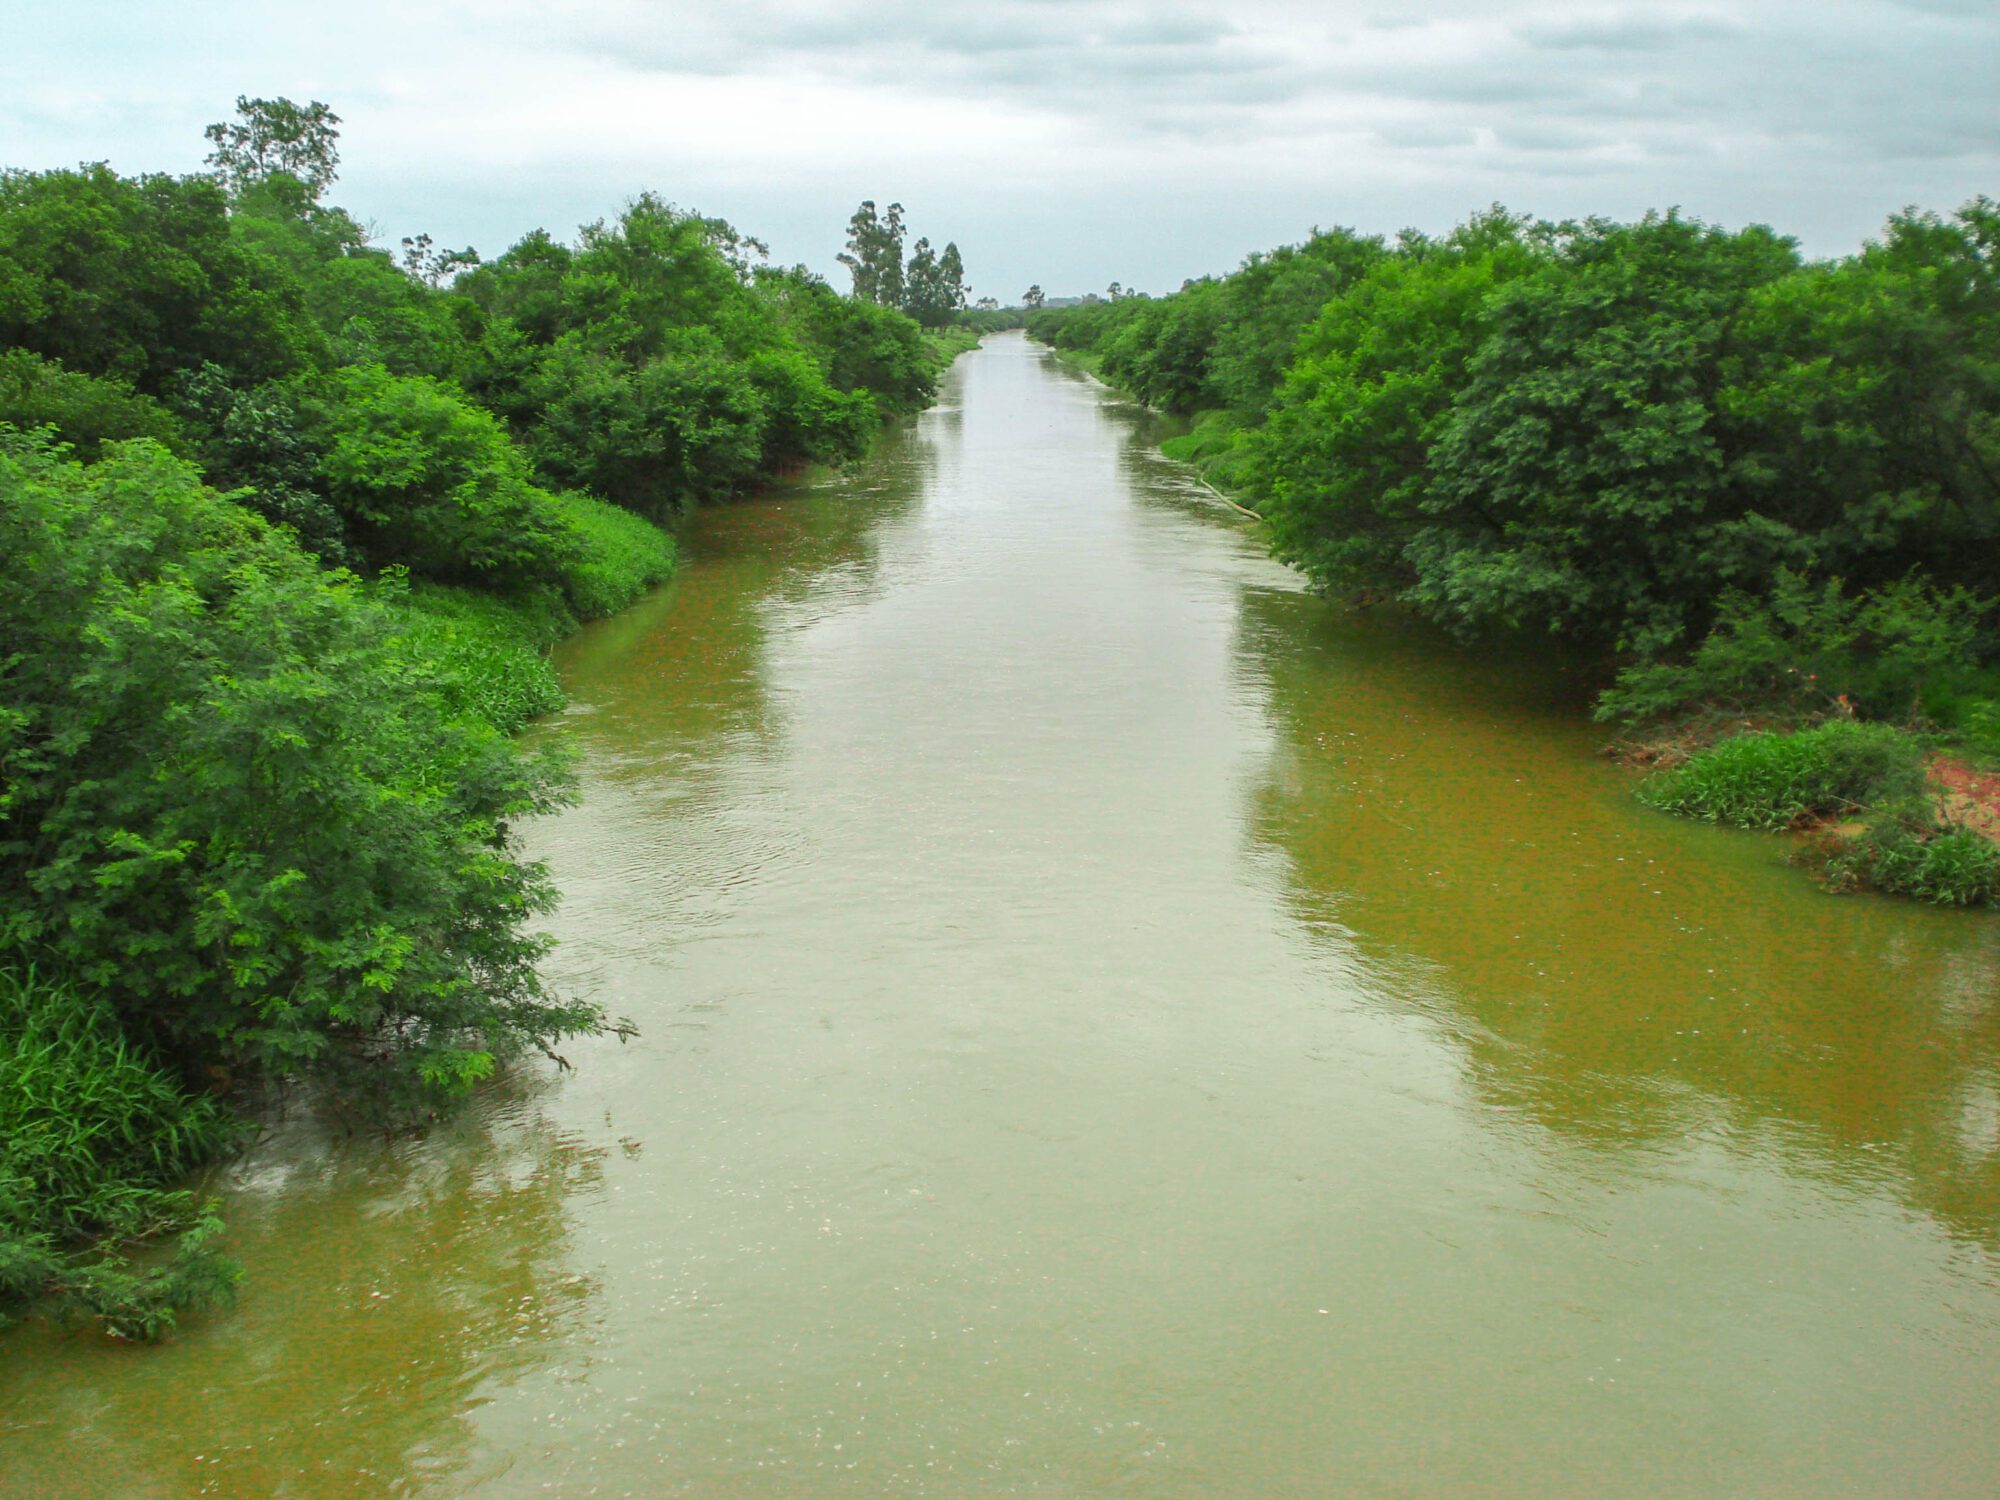 Em prol da preservação das águas, Comitê do Rio Urussanga clama por maior mobilização